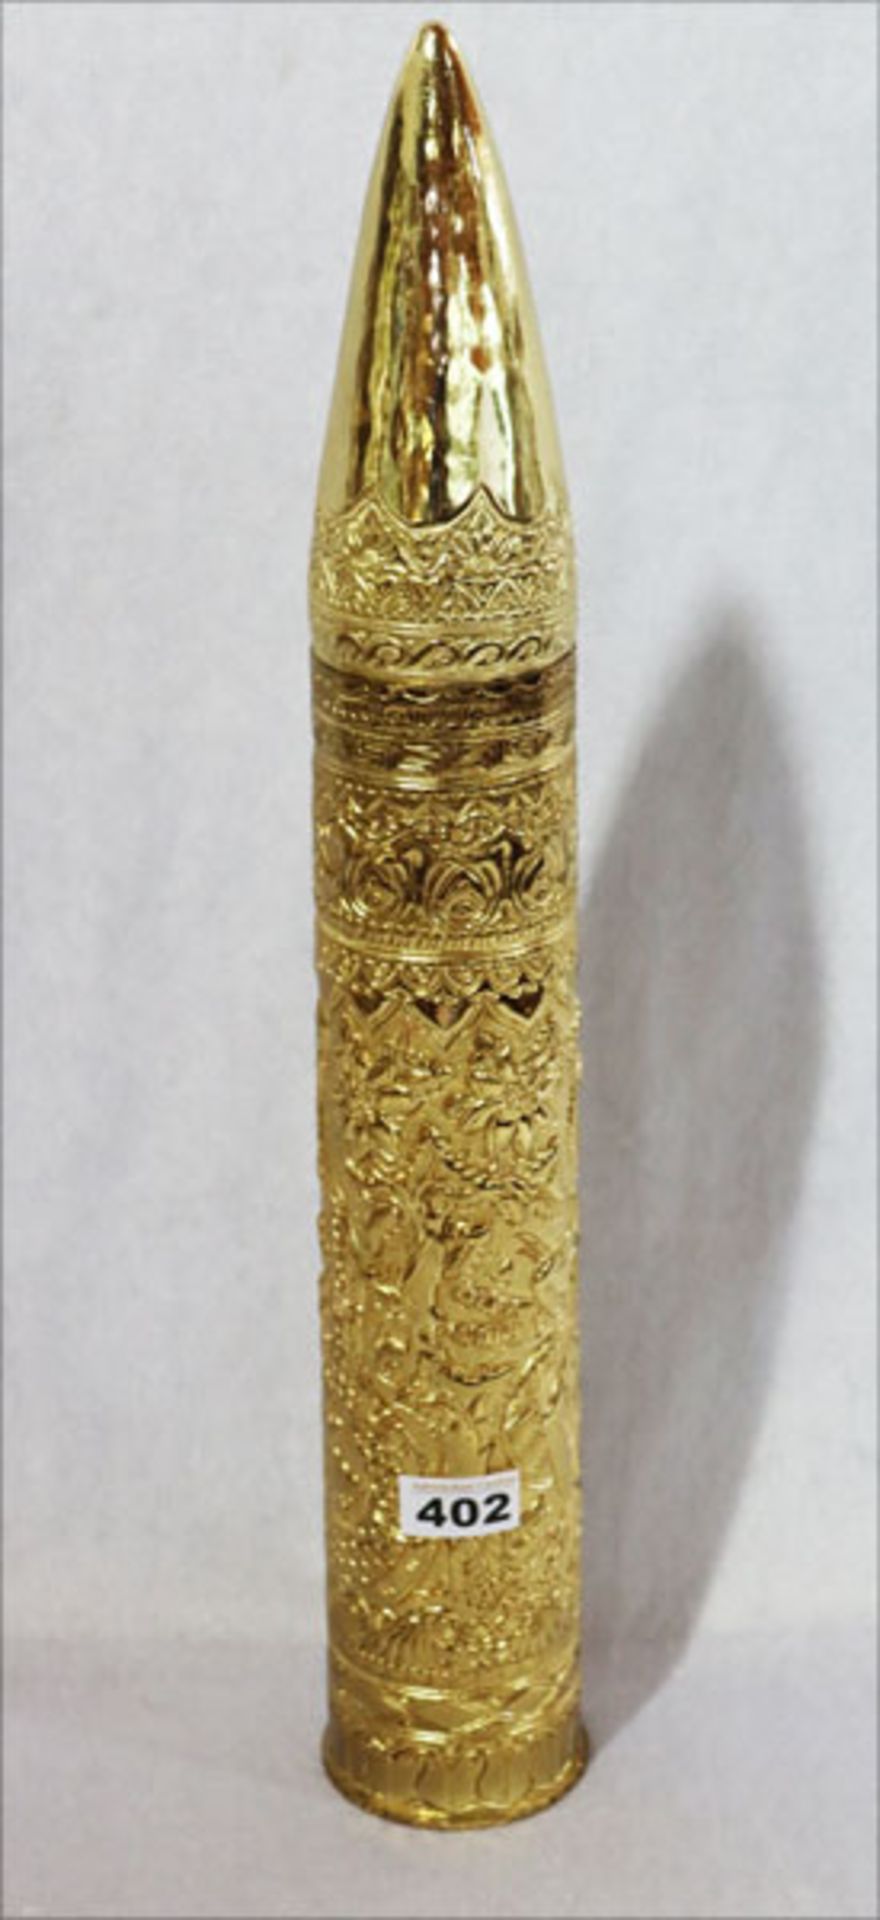 Kartusche eines 75 mm Geschosses mit geprägtem, indonesischem Dekor, vergoldet, H 57 cm